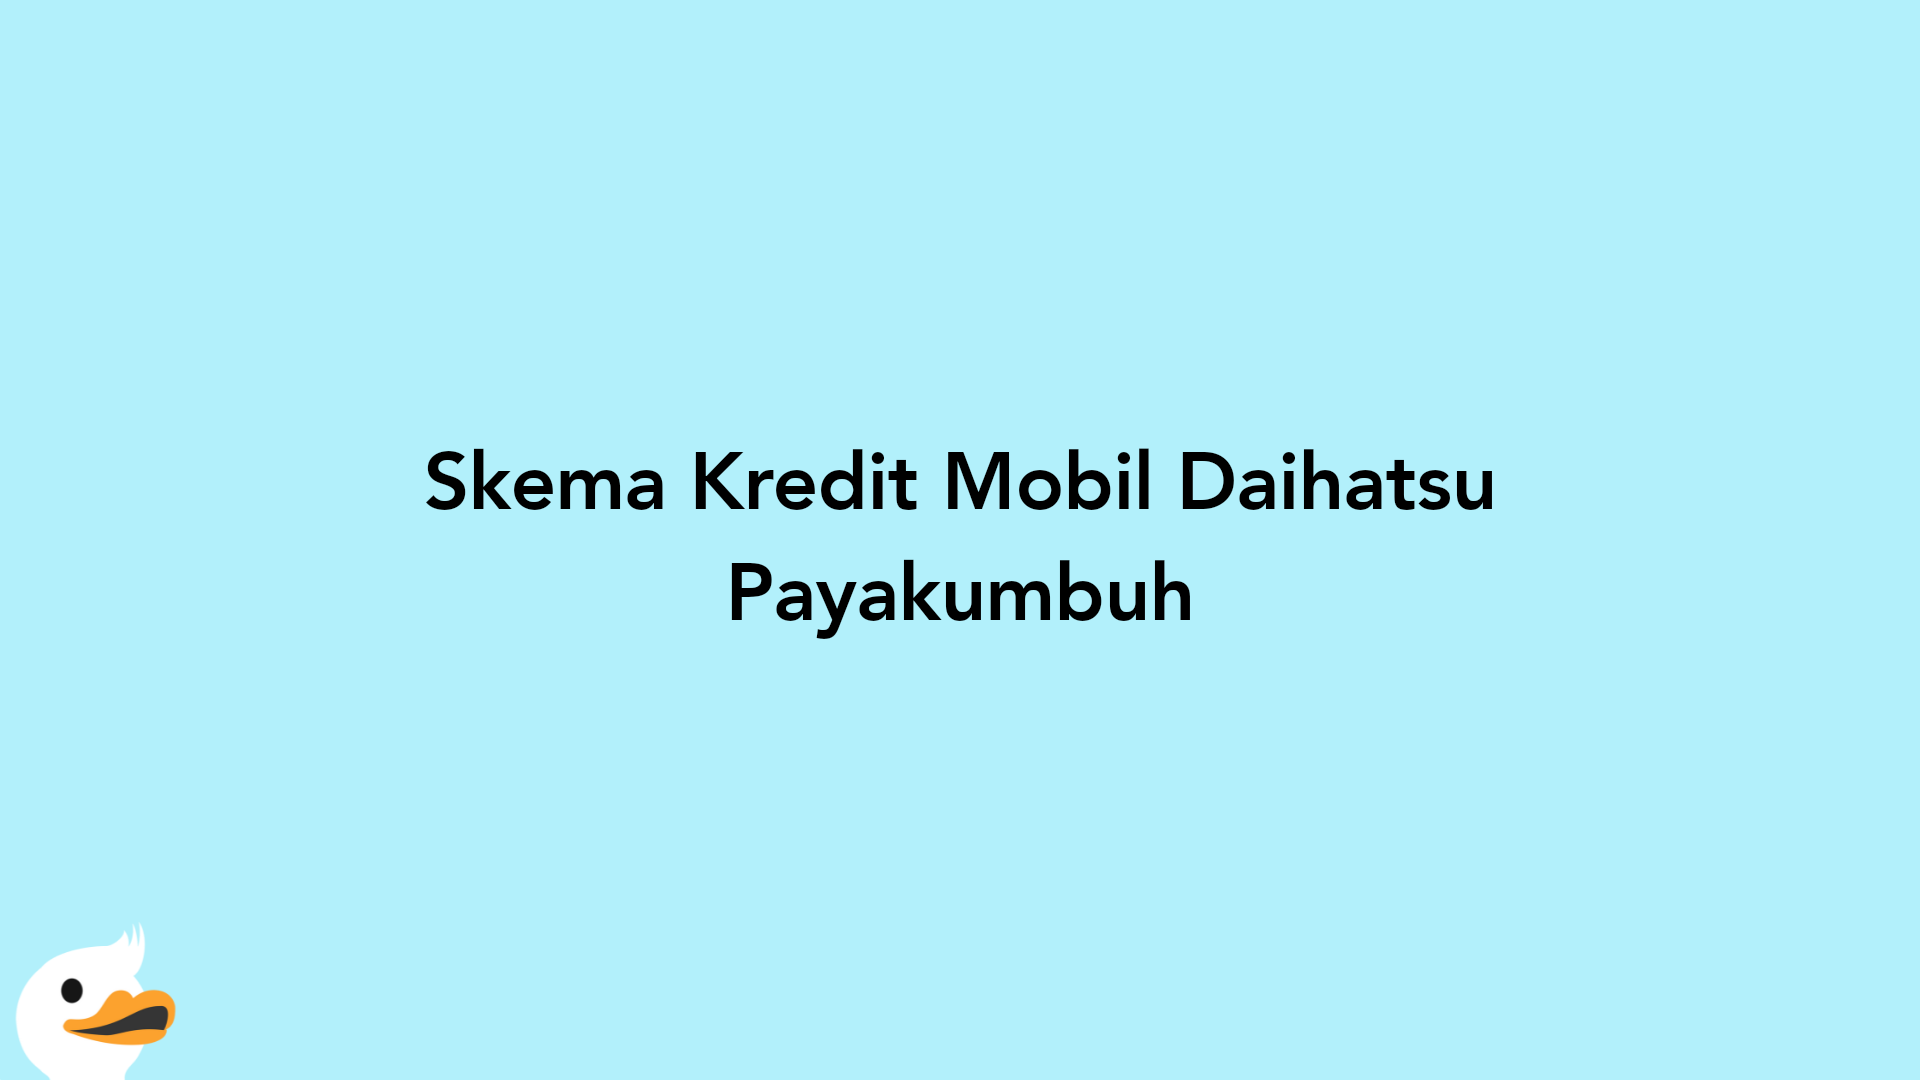 Skema Kredit Mobil Daihatsu Payakumbuh